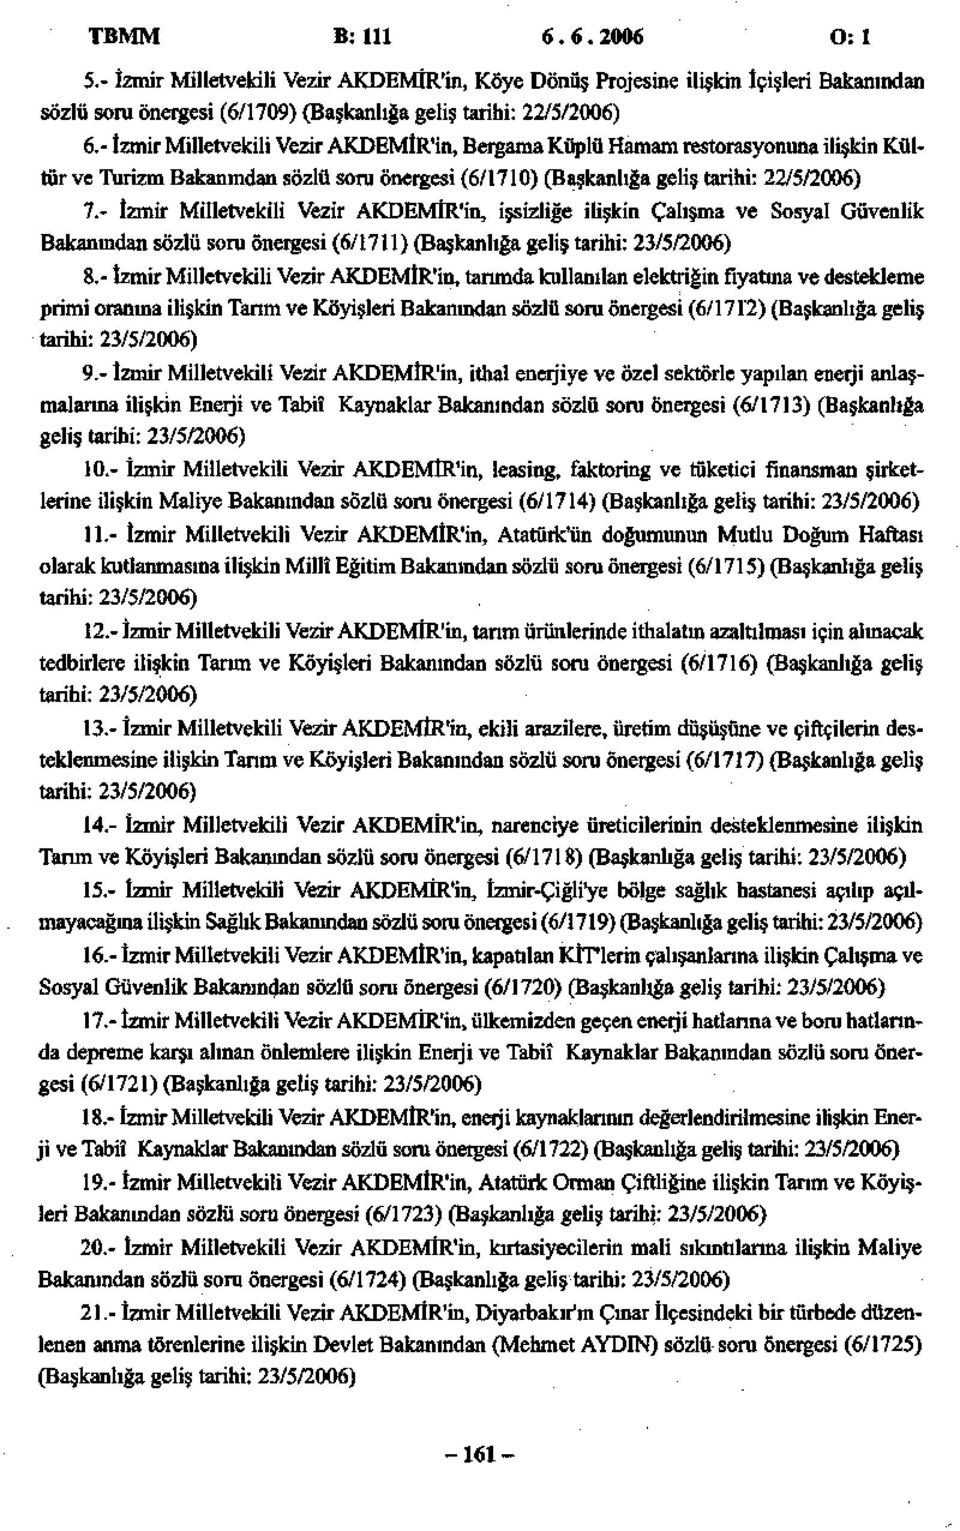 - İzmir Milletvekili Vezir AKDEMİR'in, işsizliğe ilişkin Çalışma ve Sosyal Güvenlik Bakanından sözlü soru önergesi (6/1711) (Başkanlığa geliş tarihi: 23/5/2006) 8.